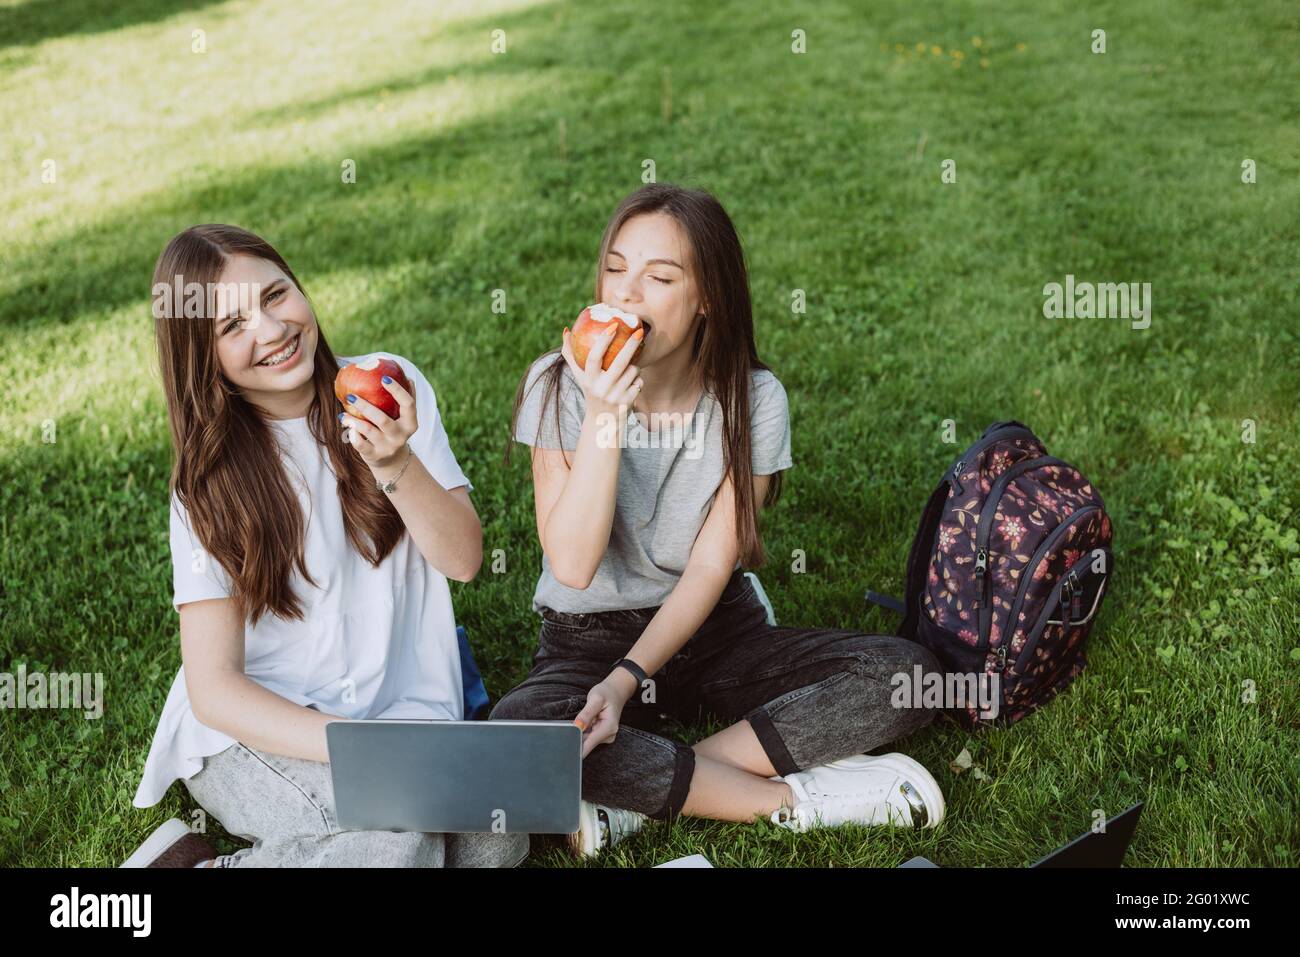 Deux étudiantes souriantes sont assises dans le parc sur l'herbe avec des livres et des ordinateurs portables, manger des pommes, étudier et préparer des examens. Distan Banque D'Images